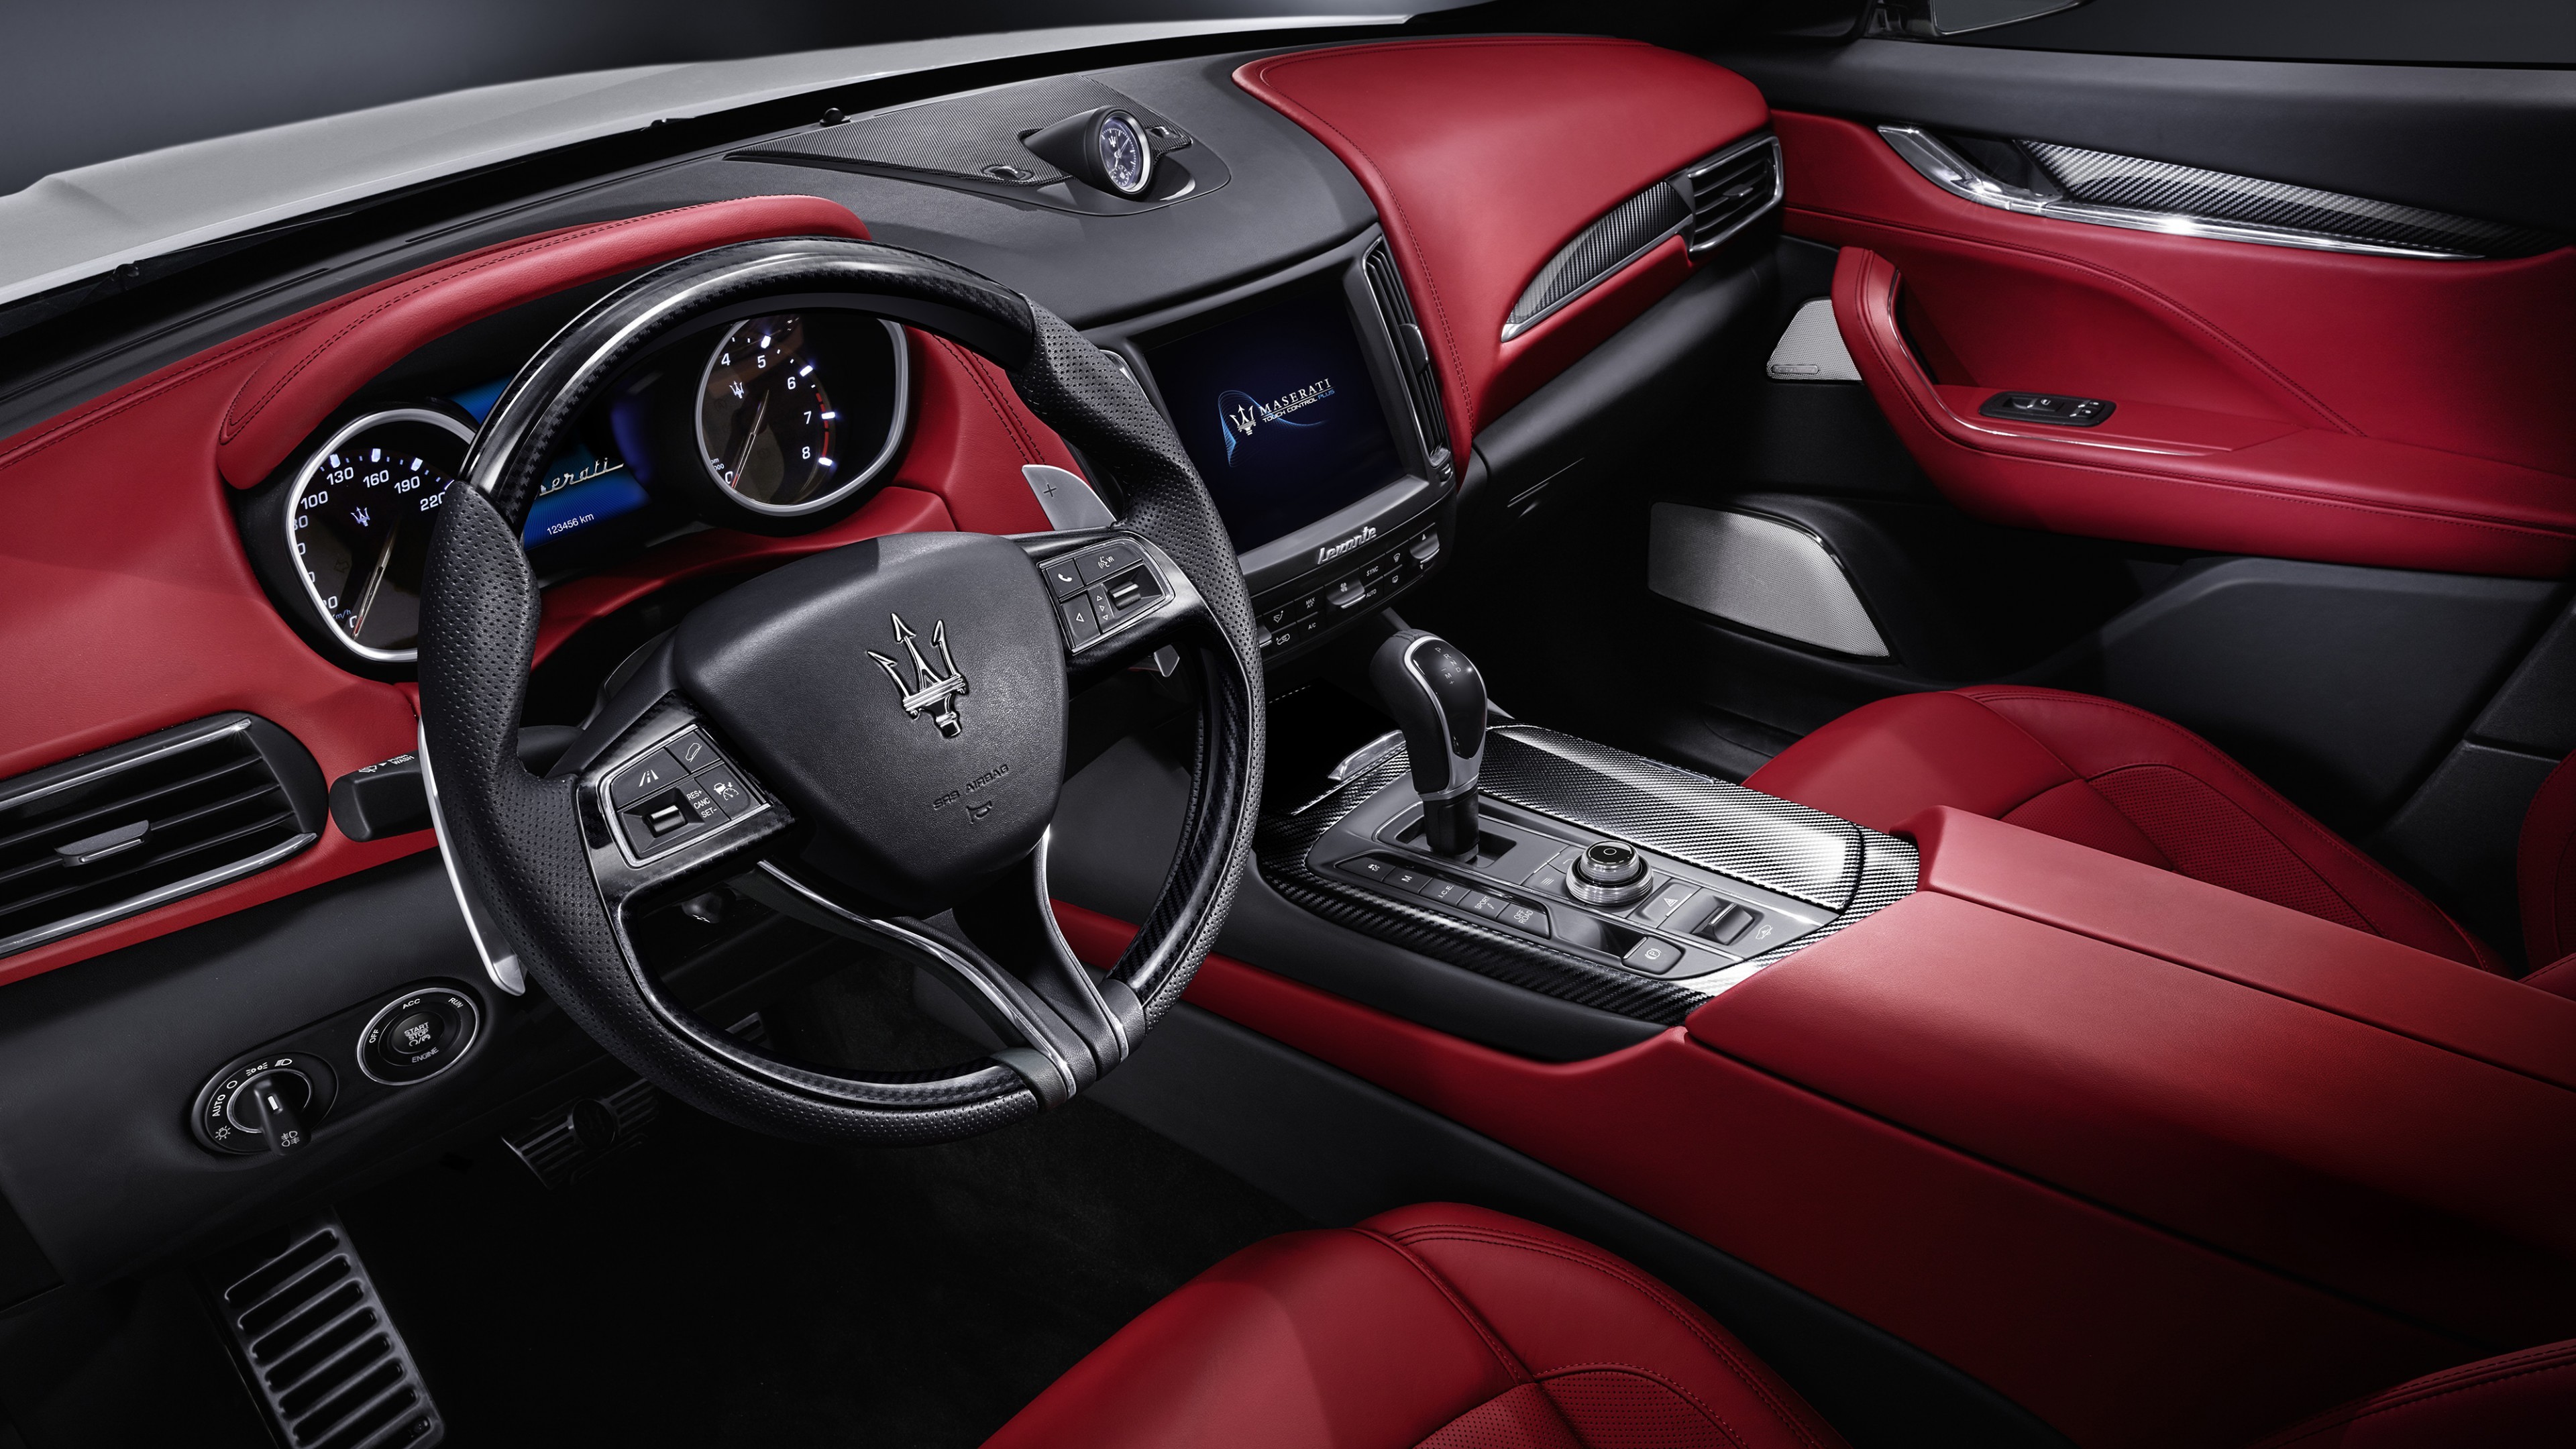 دانلود والپیپر فوق العاده قشنگ از داخل ماشین با رنگ قرمز 